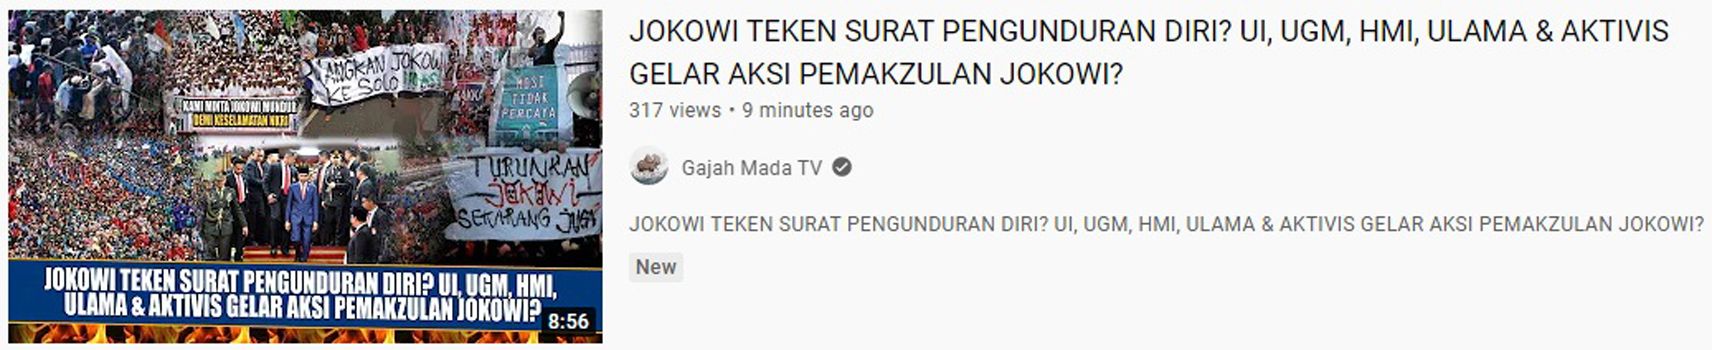 kabar yang menyebut Presiden Jokowi tanda tangani surat pengunduran diri dan UI, UGM, HMI, ulama hingga aktivis siap gelar aksi pemakzulan